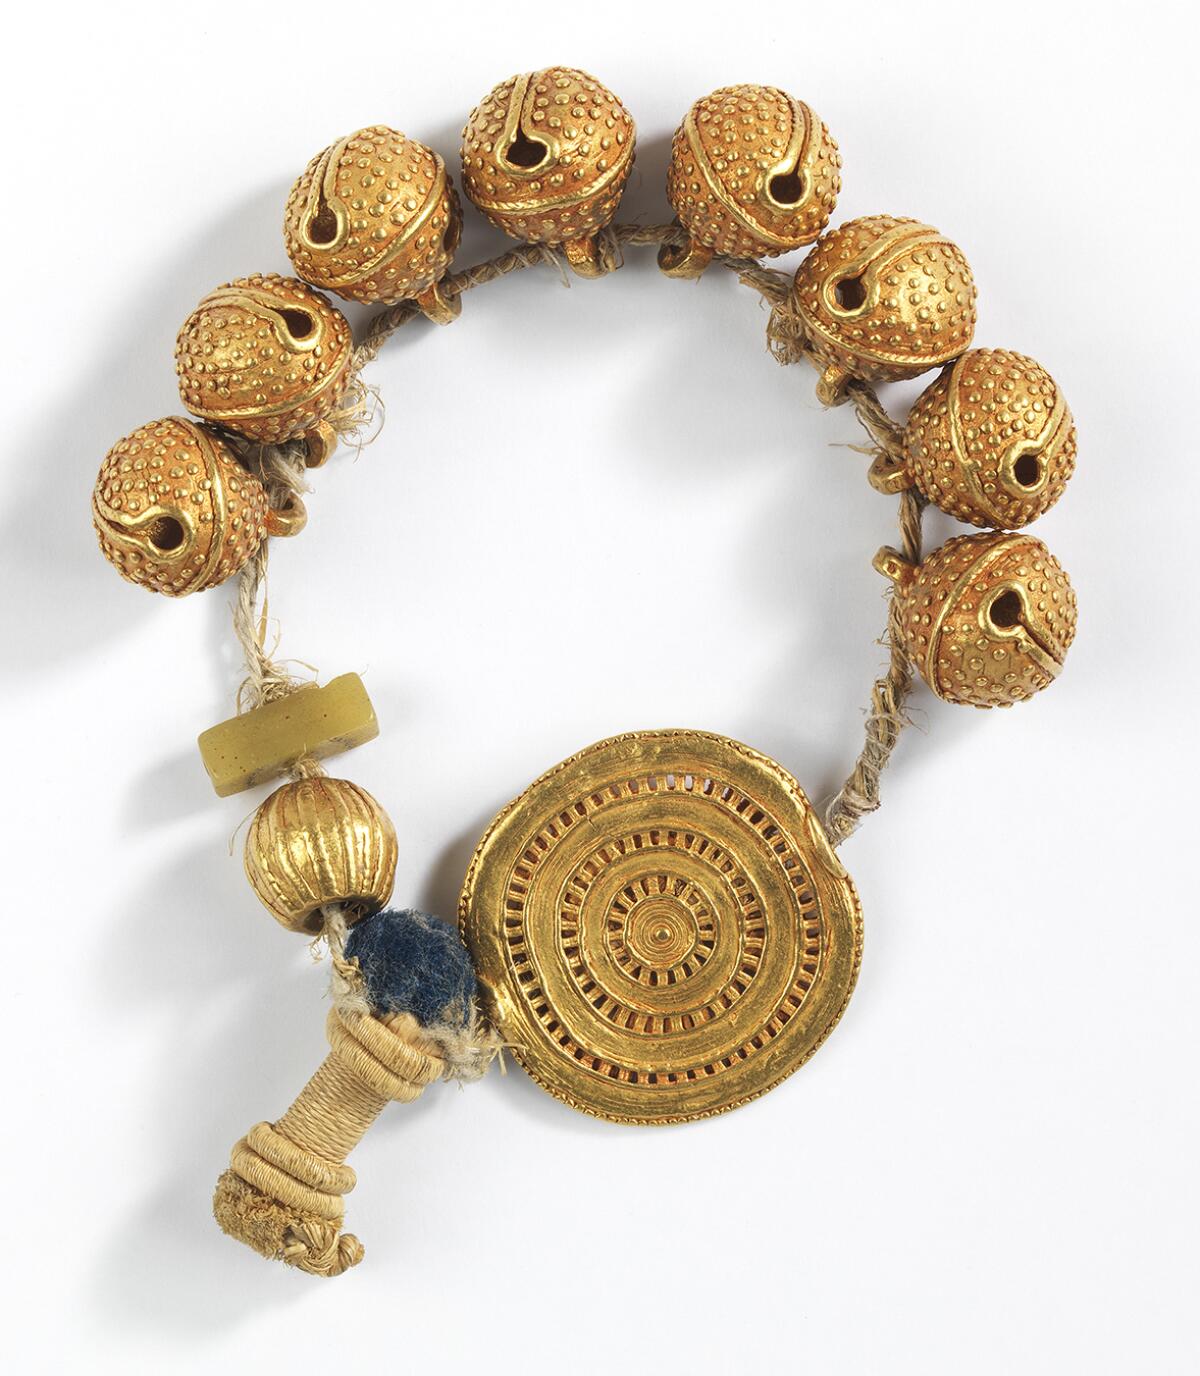 A beaded gold bracelet or anklet.